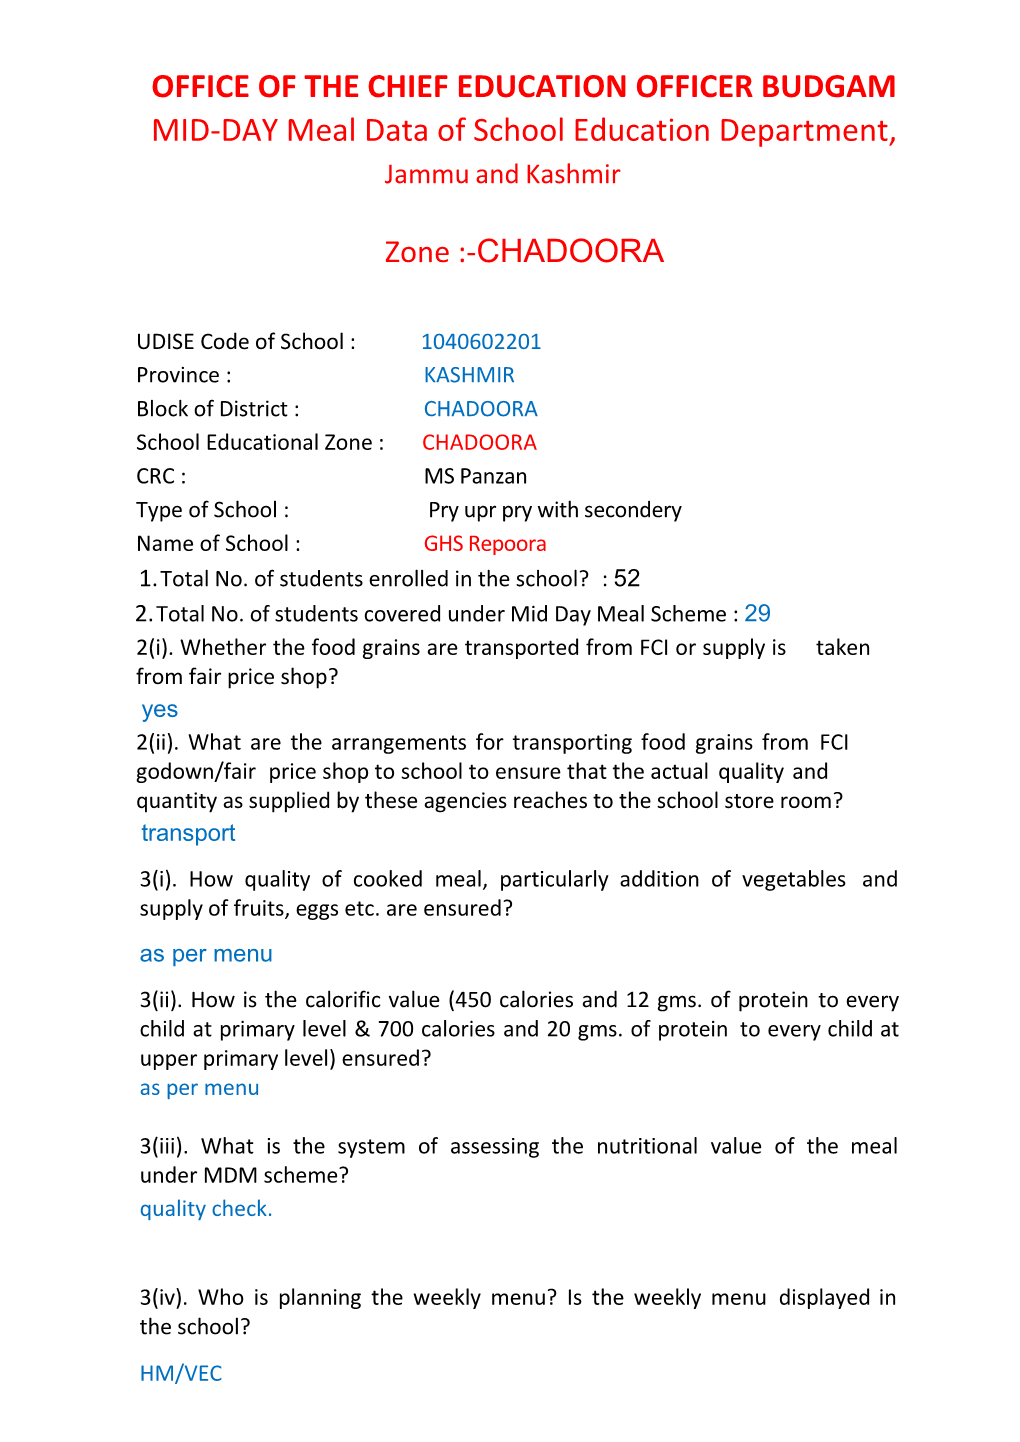 Zone Chadoora